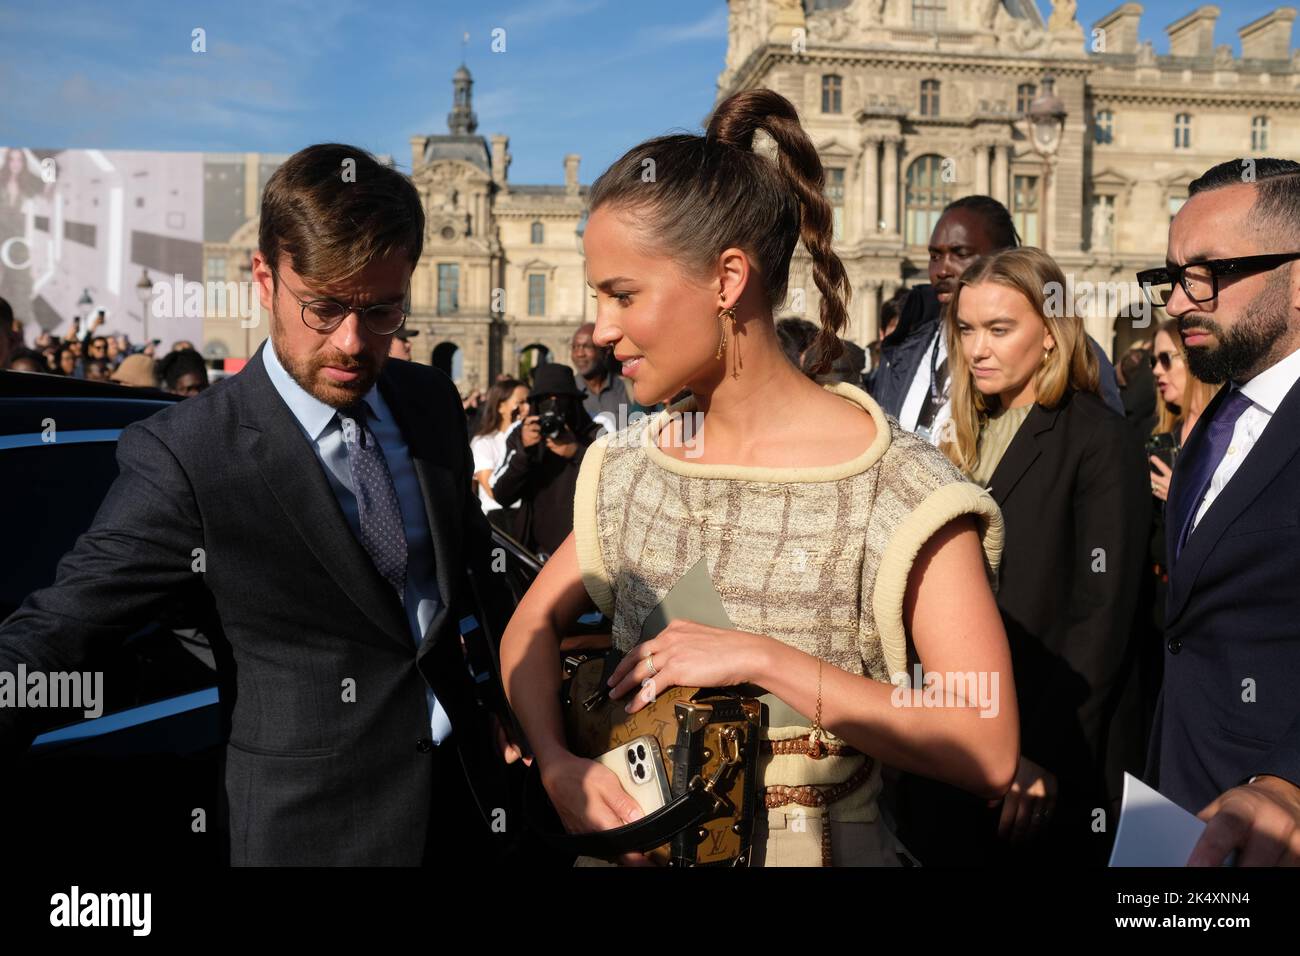 De nombreuses personnalités,actrices, mannequins, influenceuses se sont retrouvées au défilé Louis Vuitton dans le palais du Louvre à Paris Stock Photo